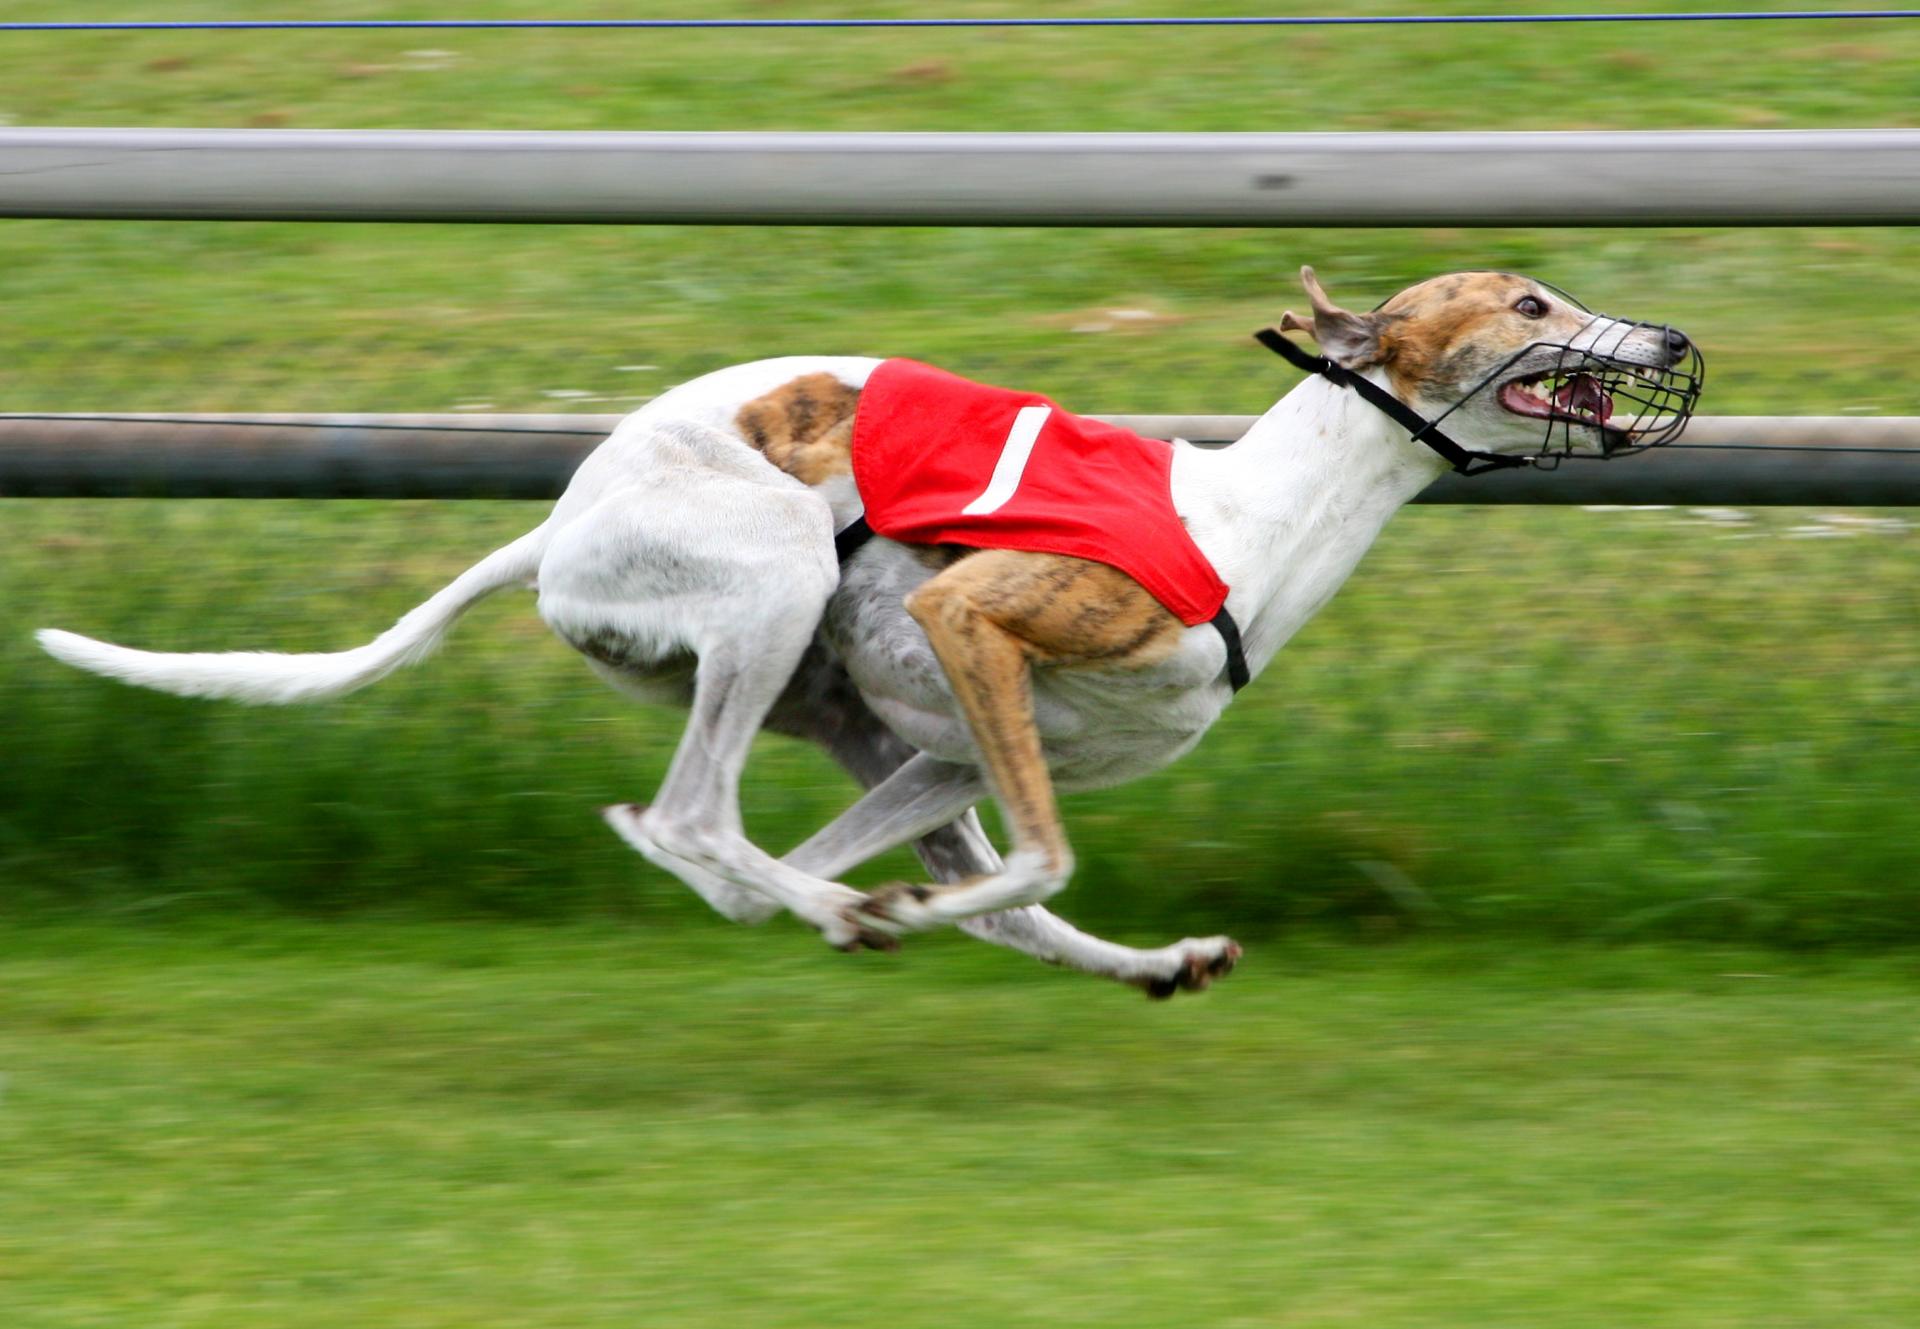 Florida greyhound race ban 2018